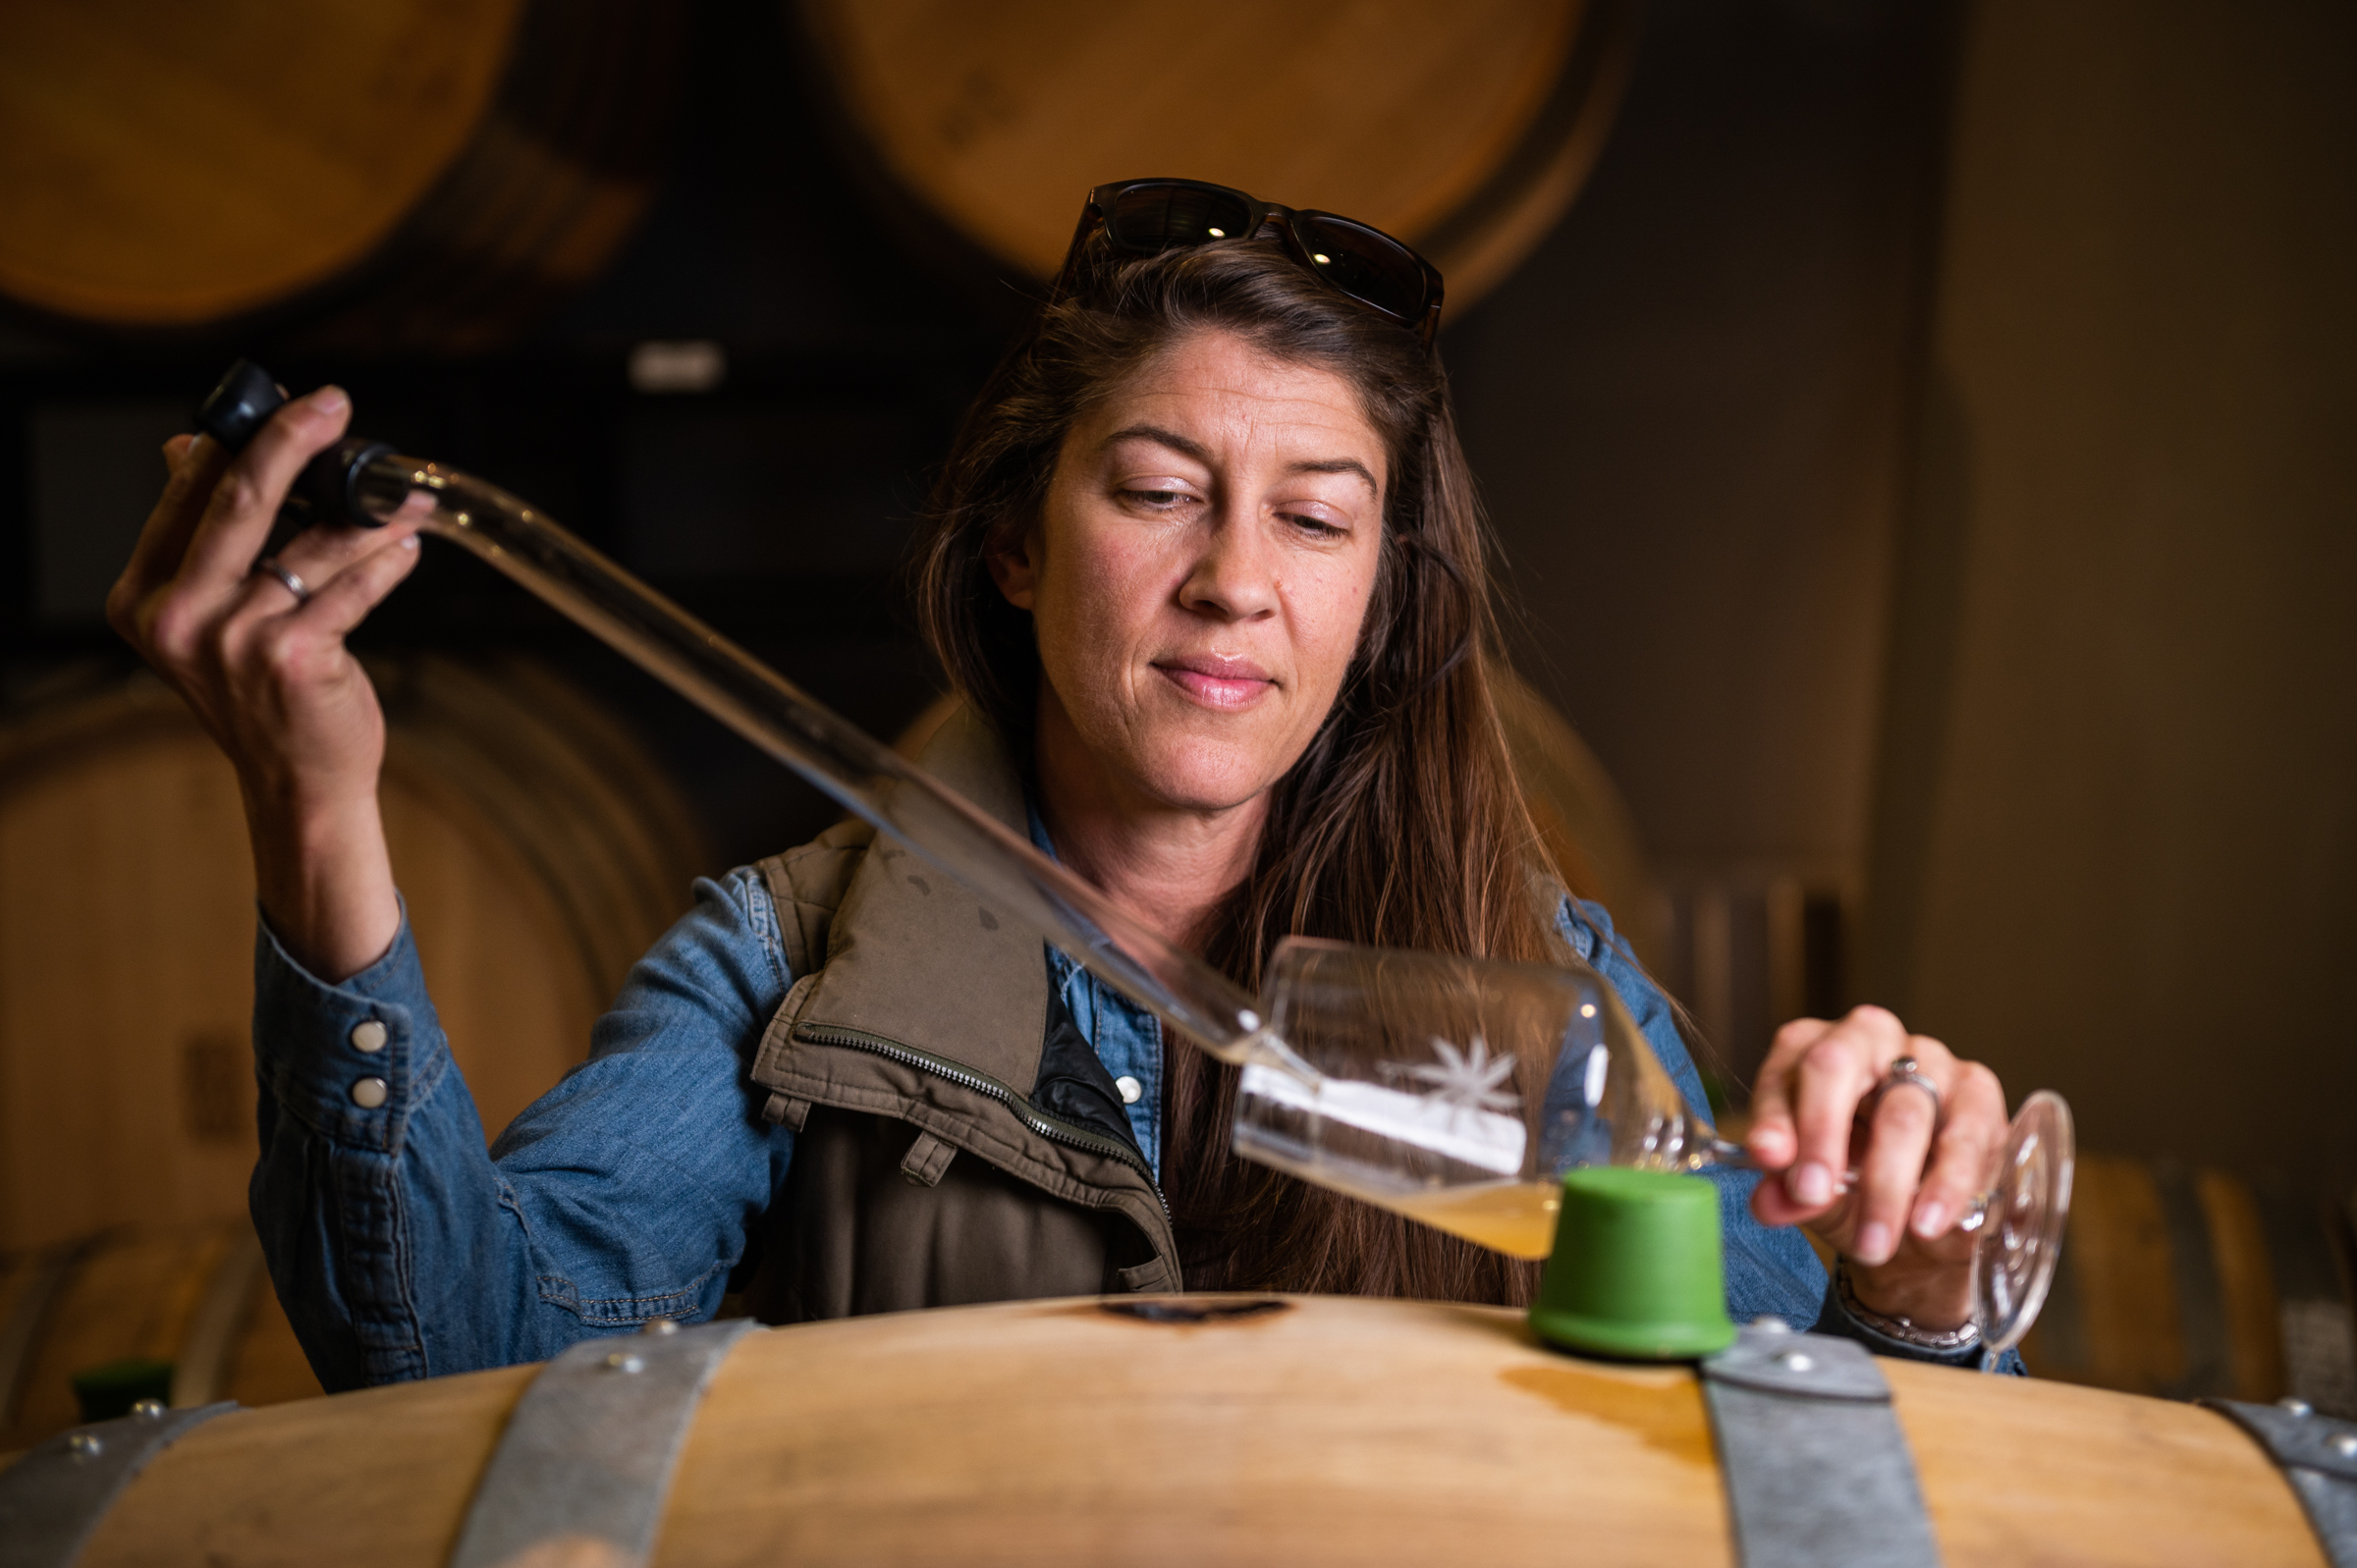 Desparada winemaker Vailia Esh pulls wine from a barrel